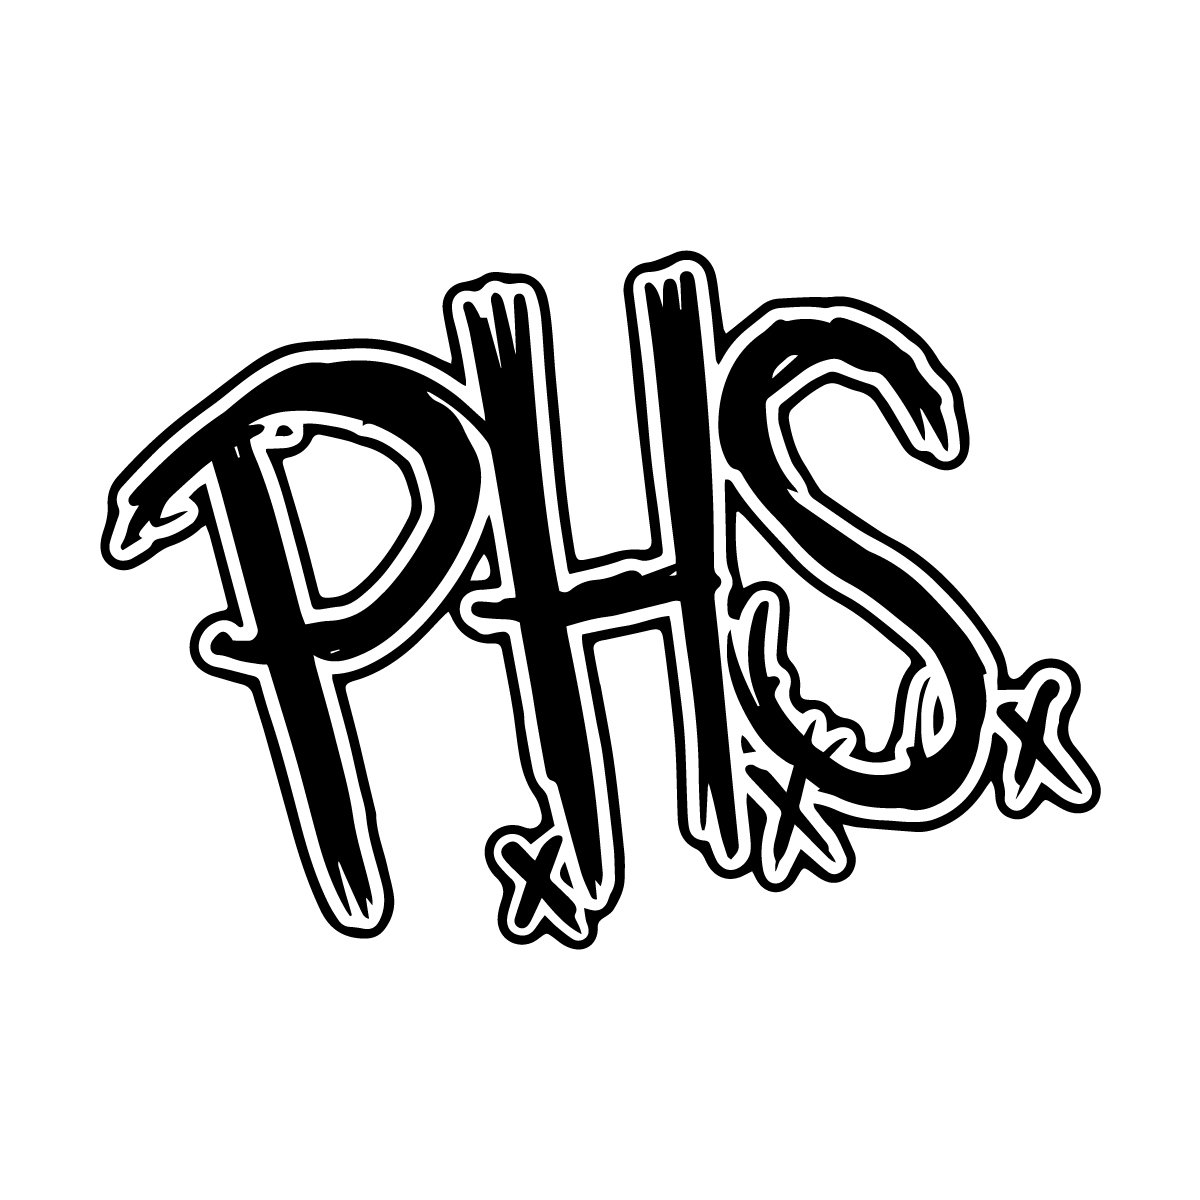 PHS-logo.jpg